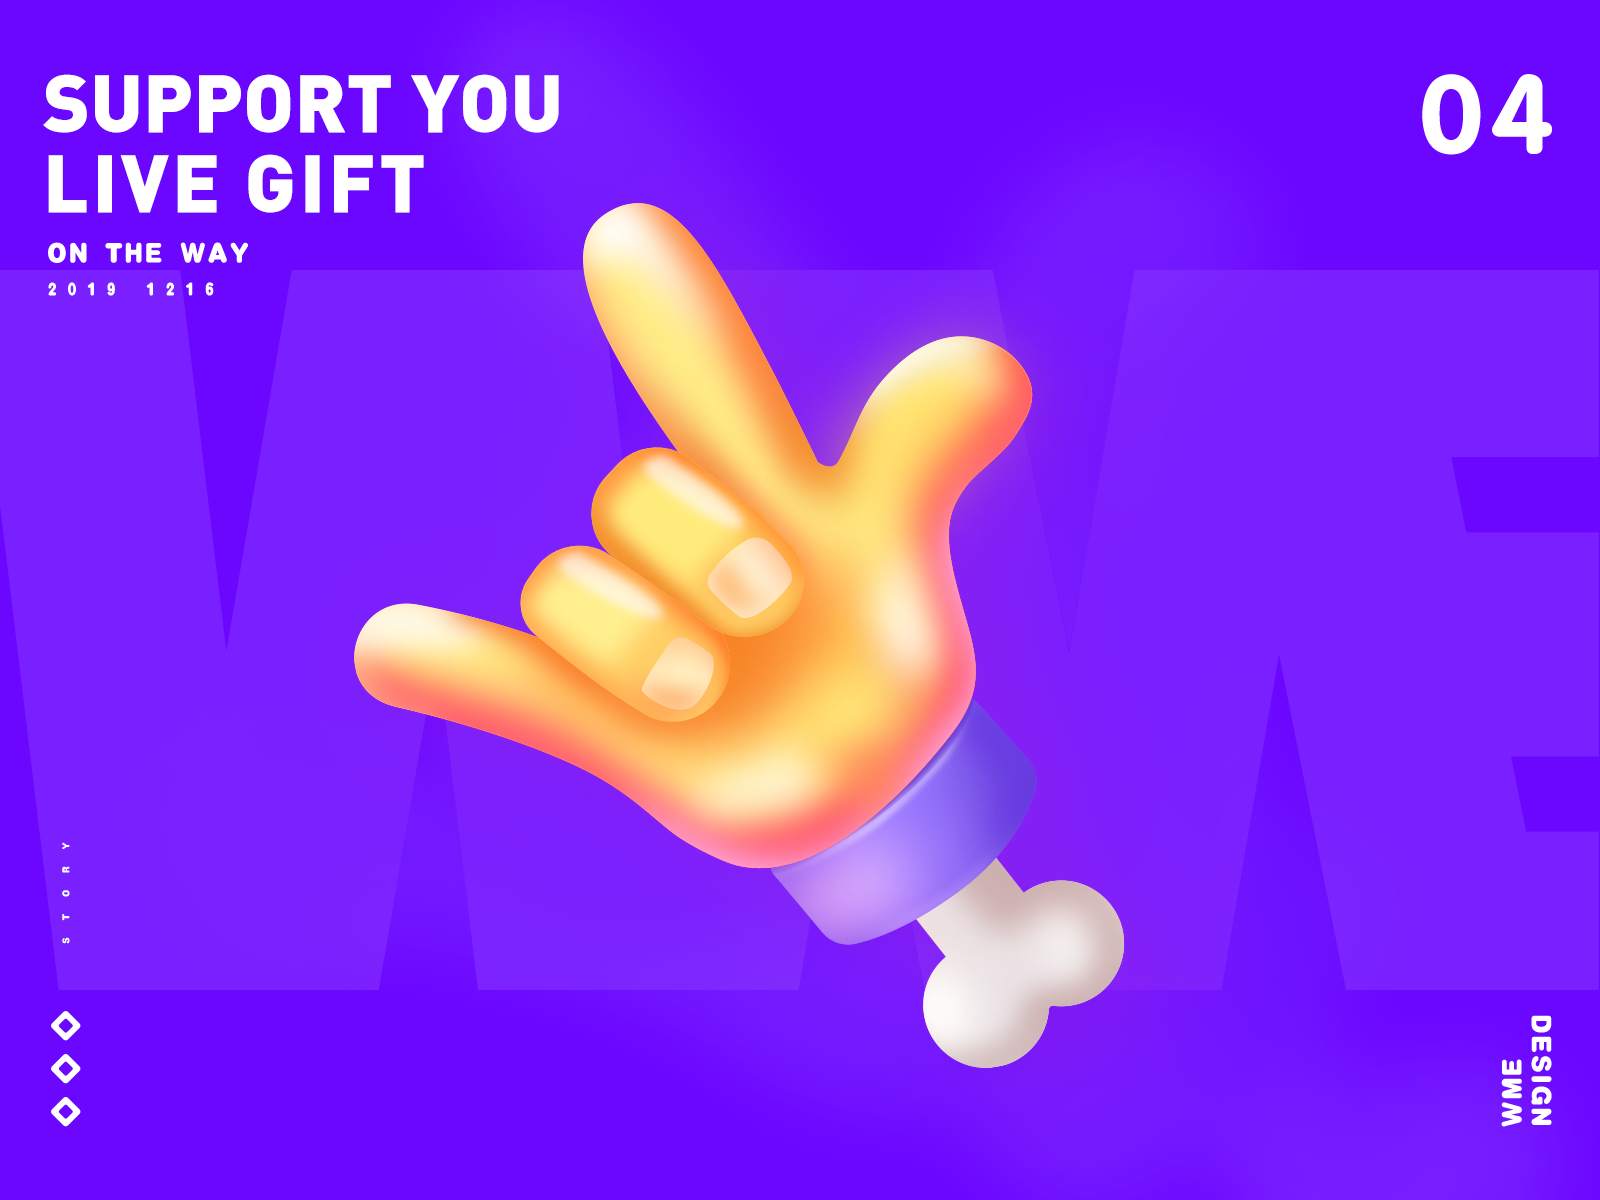 SUPPORT YOU-LIVE GIFT affinity designer design hand illustration live gift love love you purple